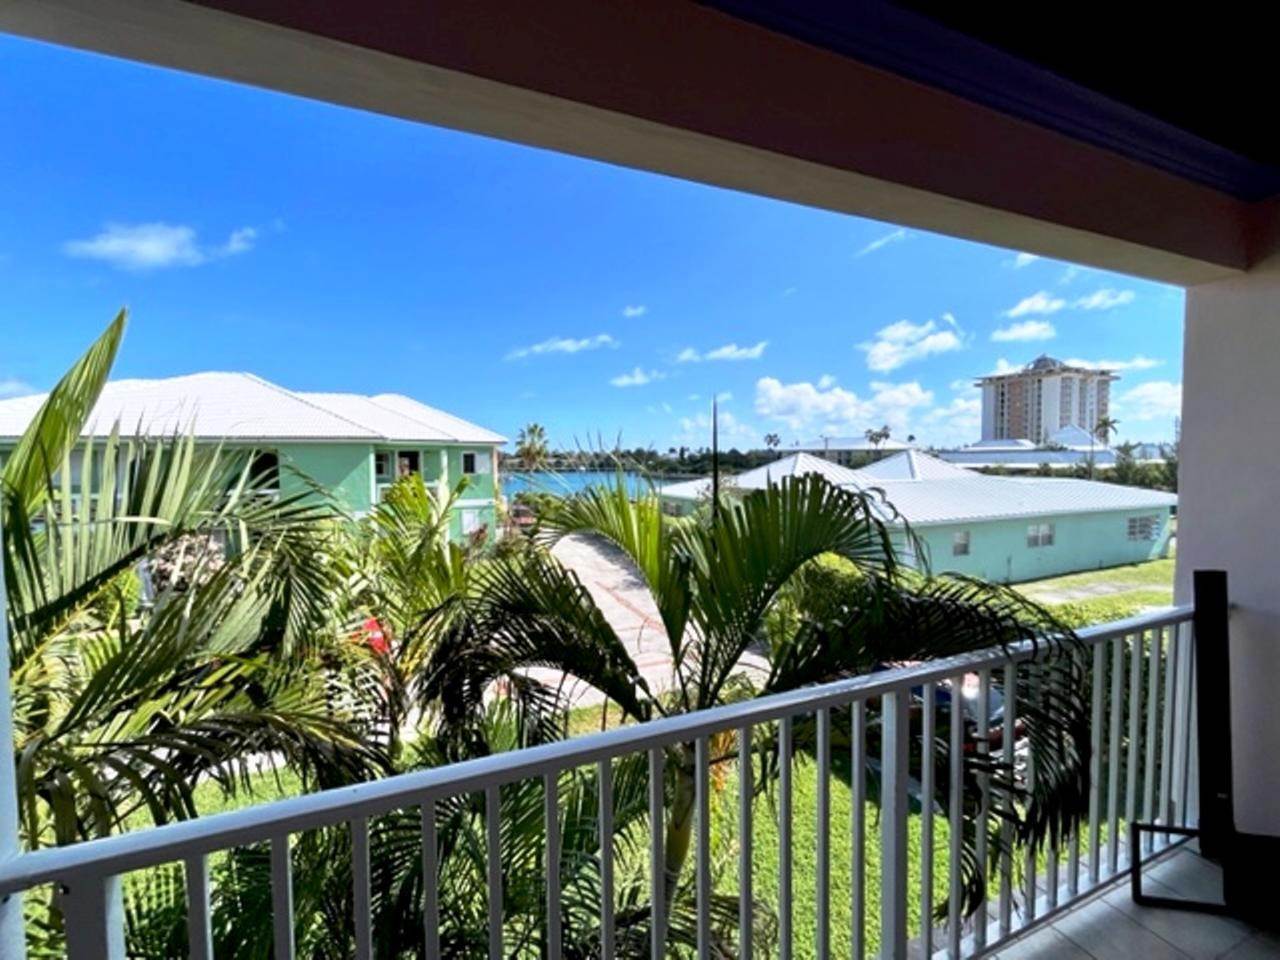 Condo for Rent at Bahamia, Freeport and Grand Bahama Bahamas